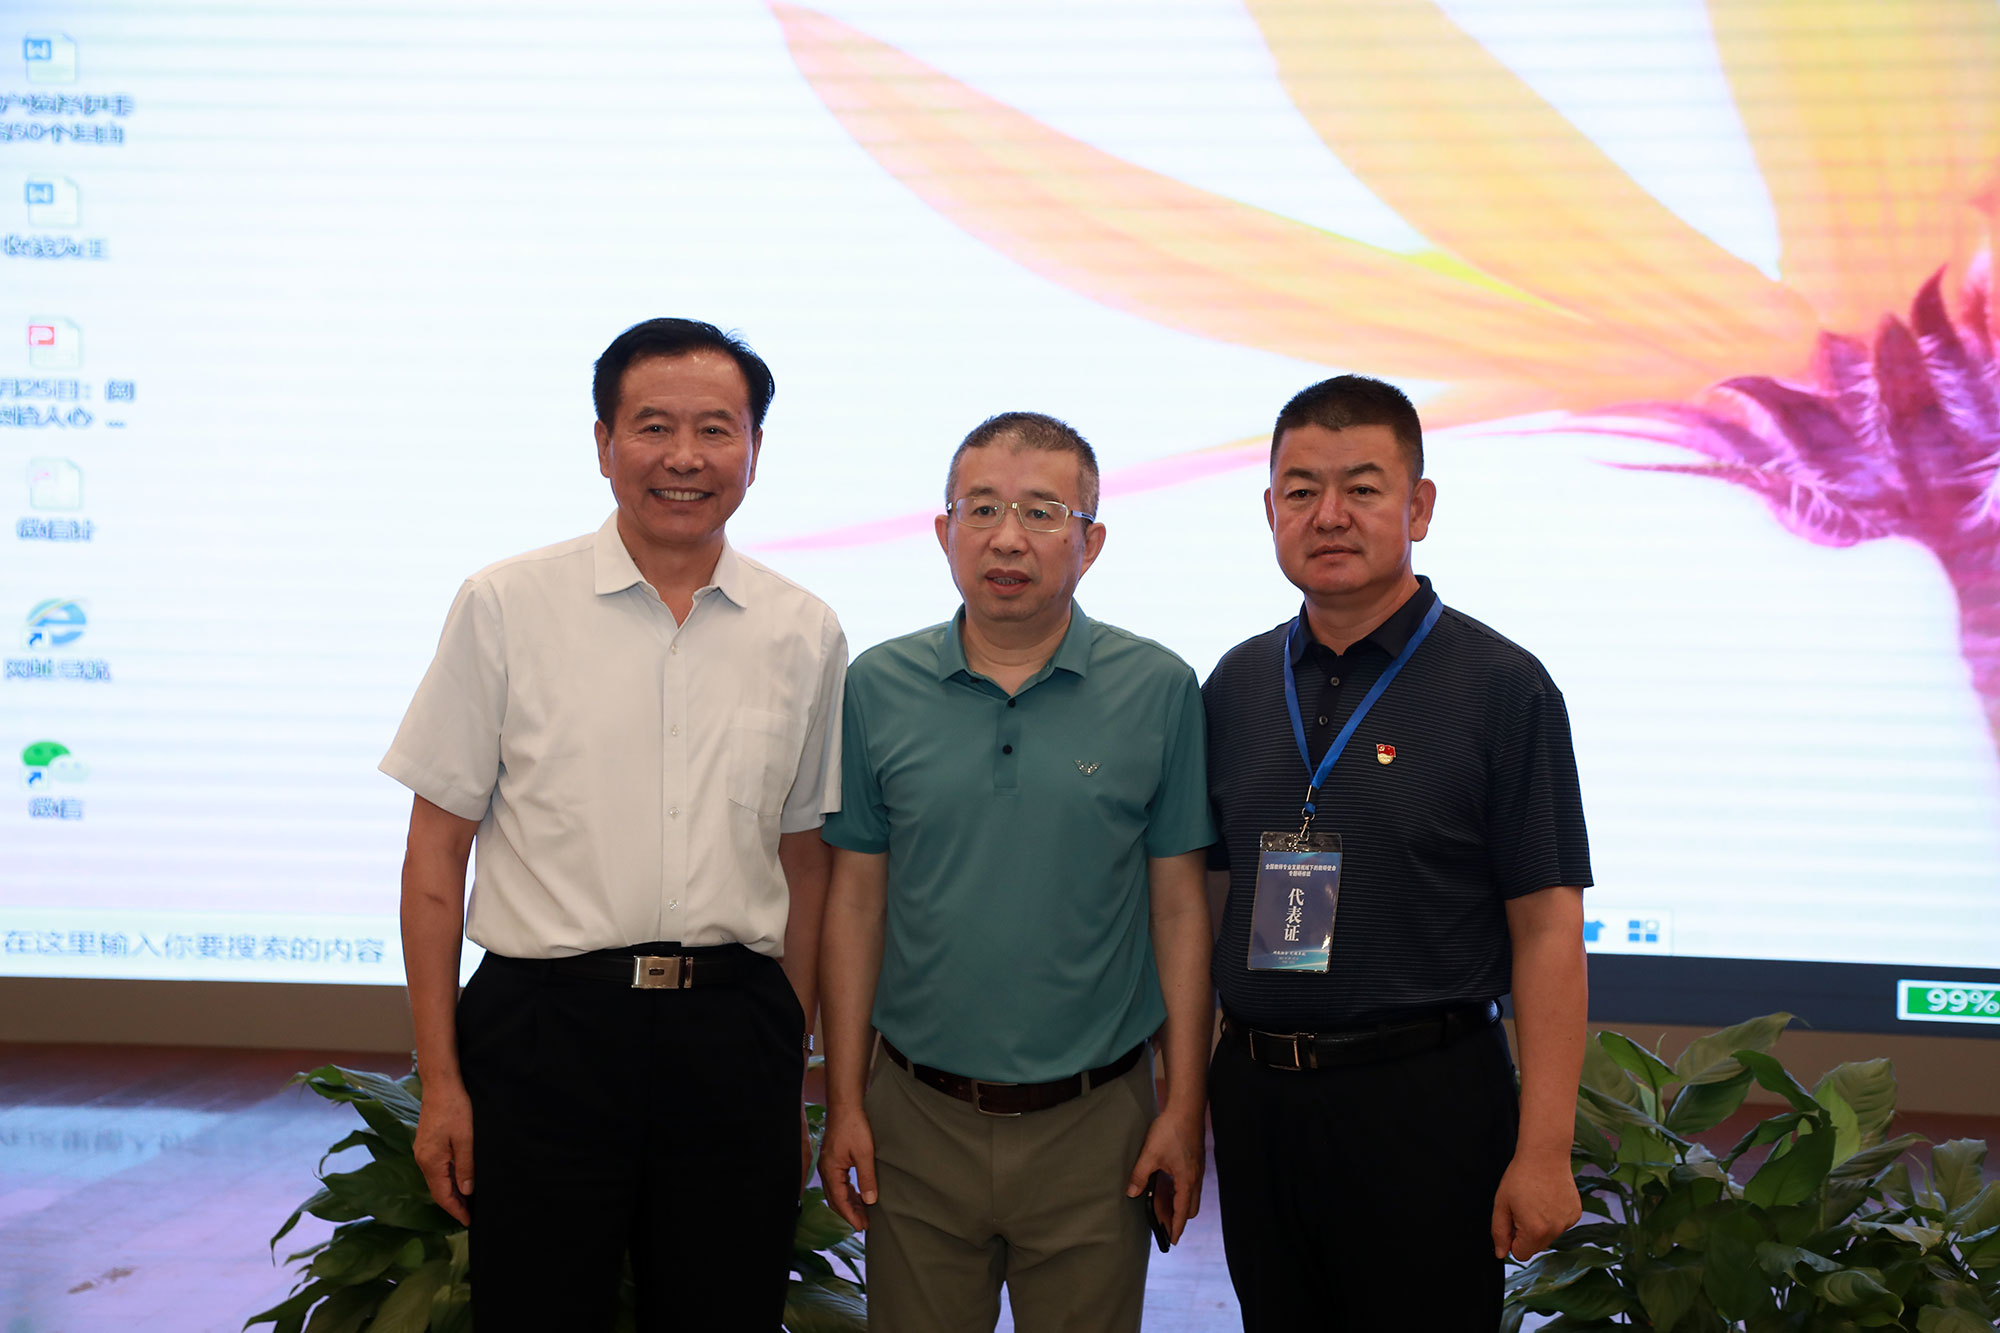 联盟秘书长、北京市人民政府督学臧富仁校长在主持学校发展与校长管理专题论坛。